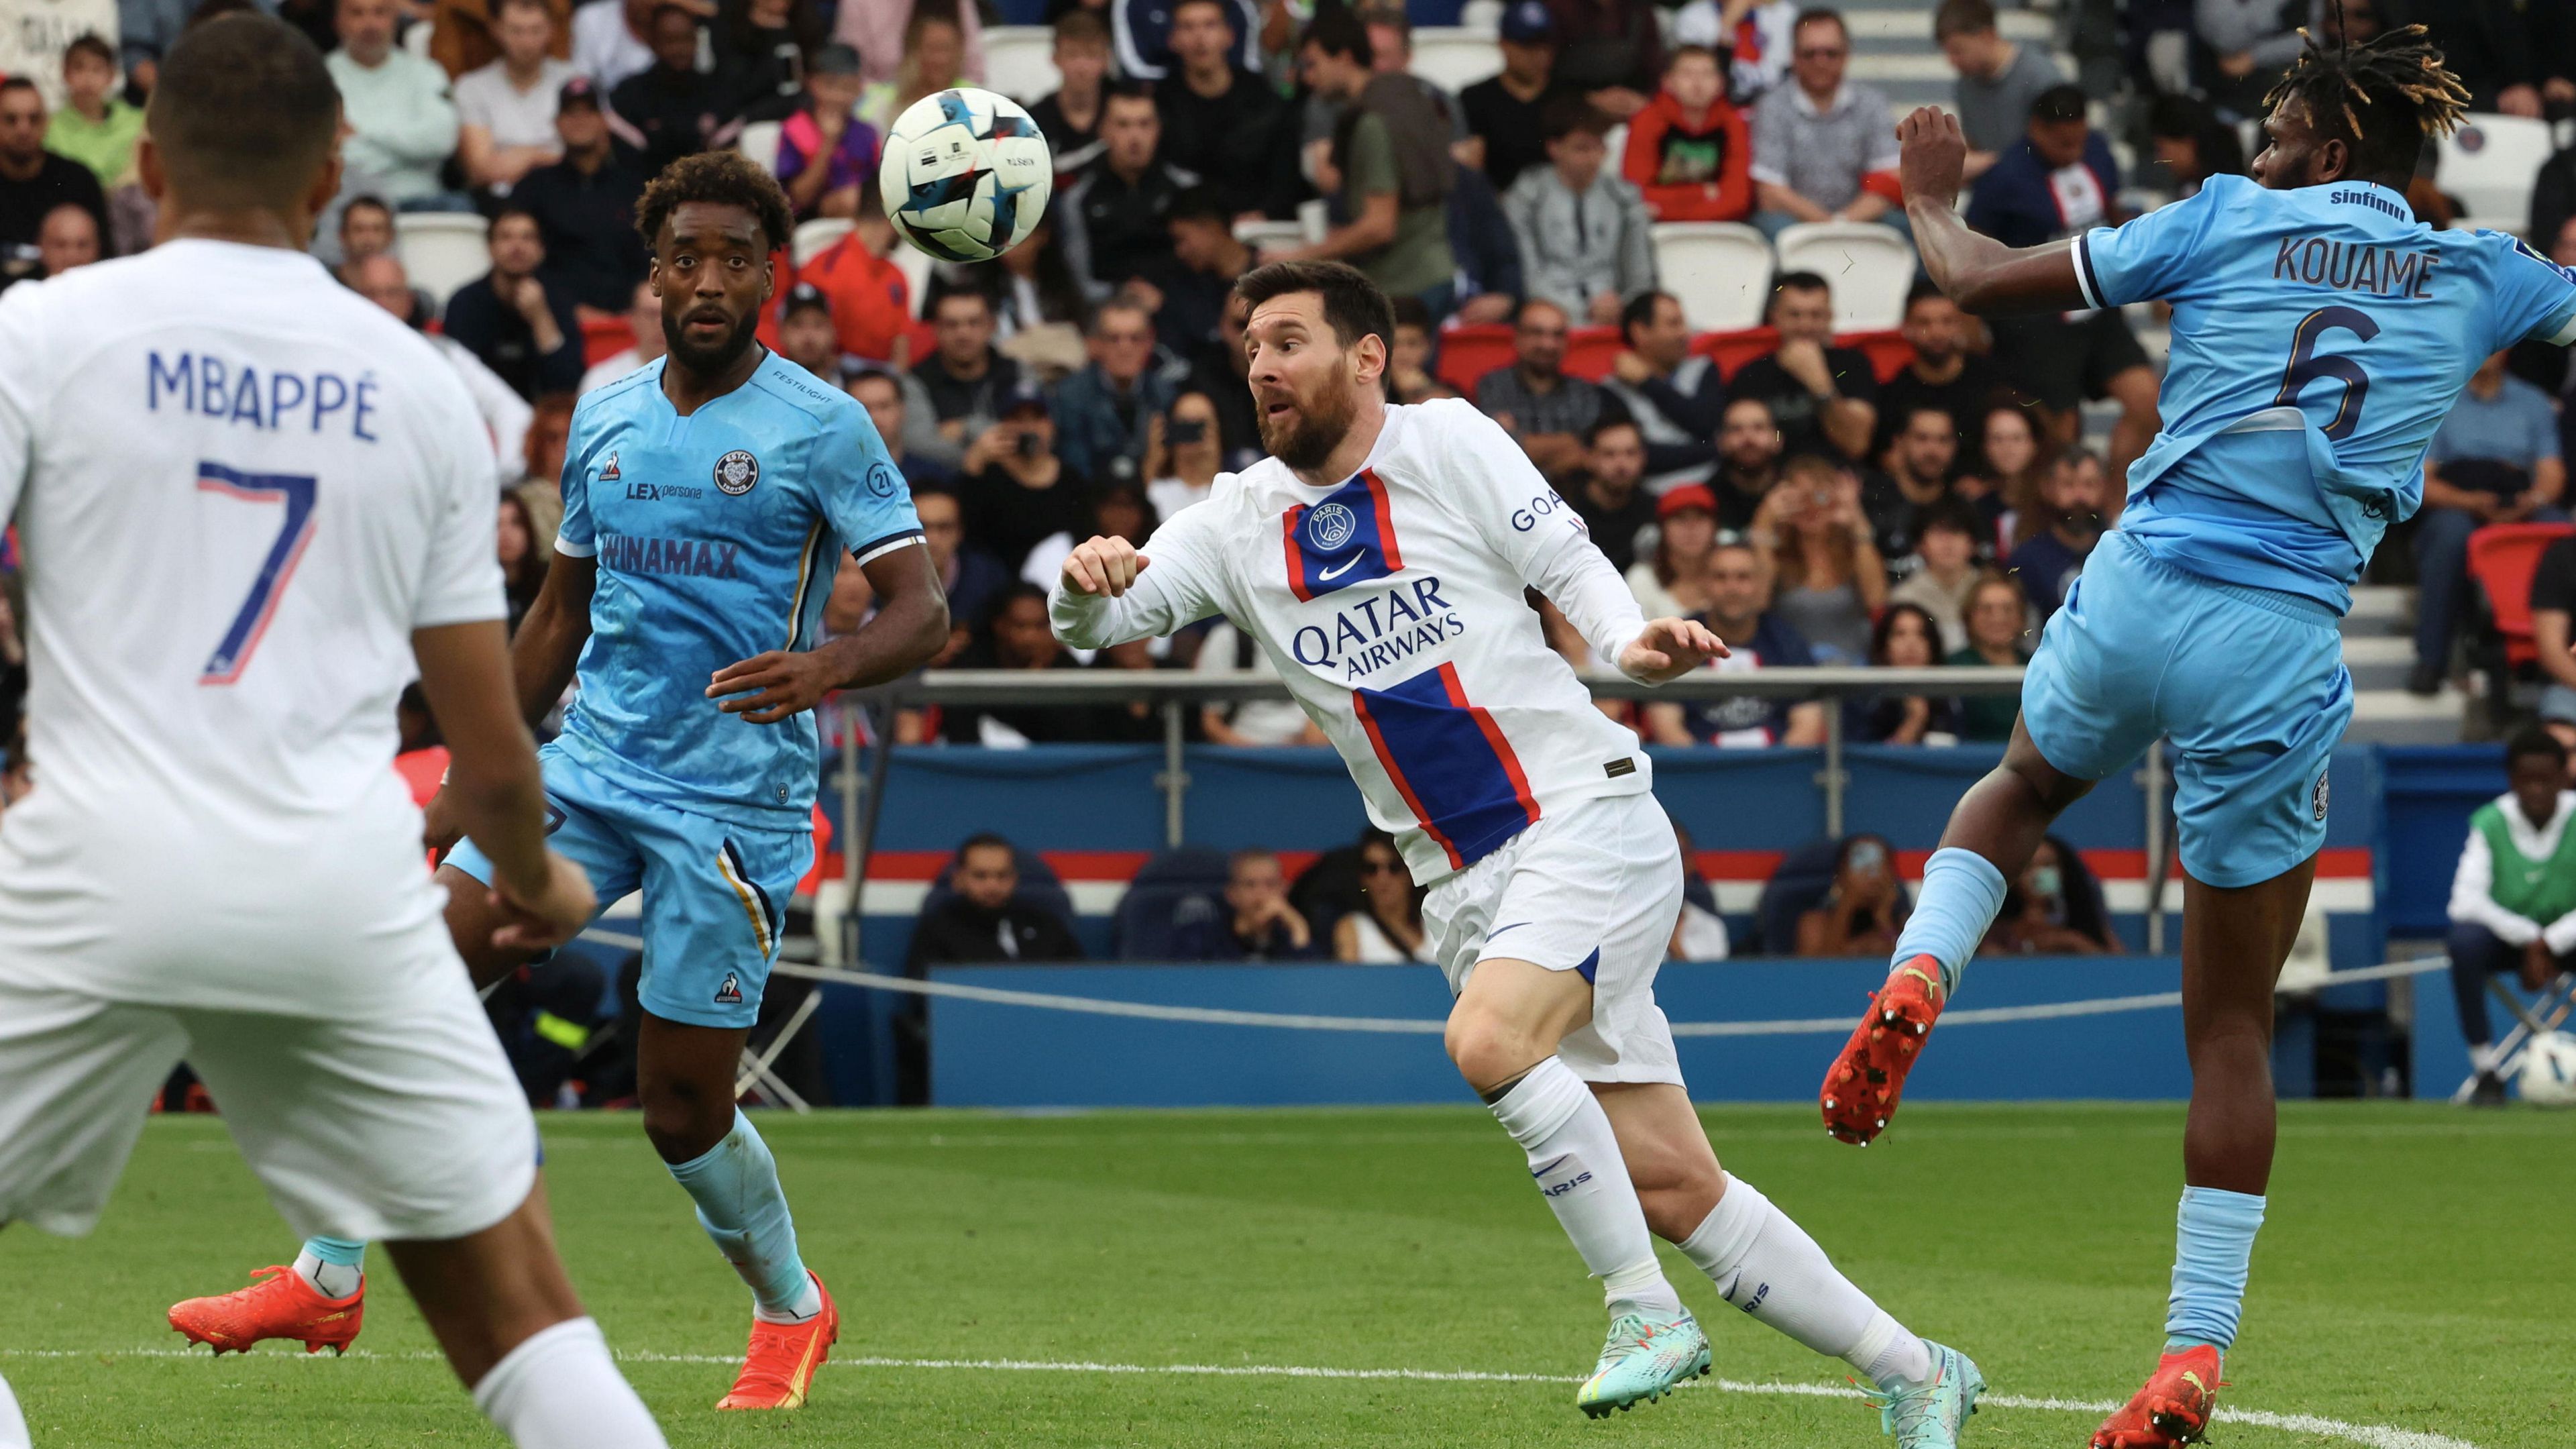 Lionel Messi remek gólt lőtt (fotó: Getty Images)